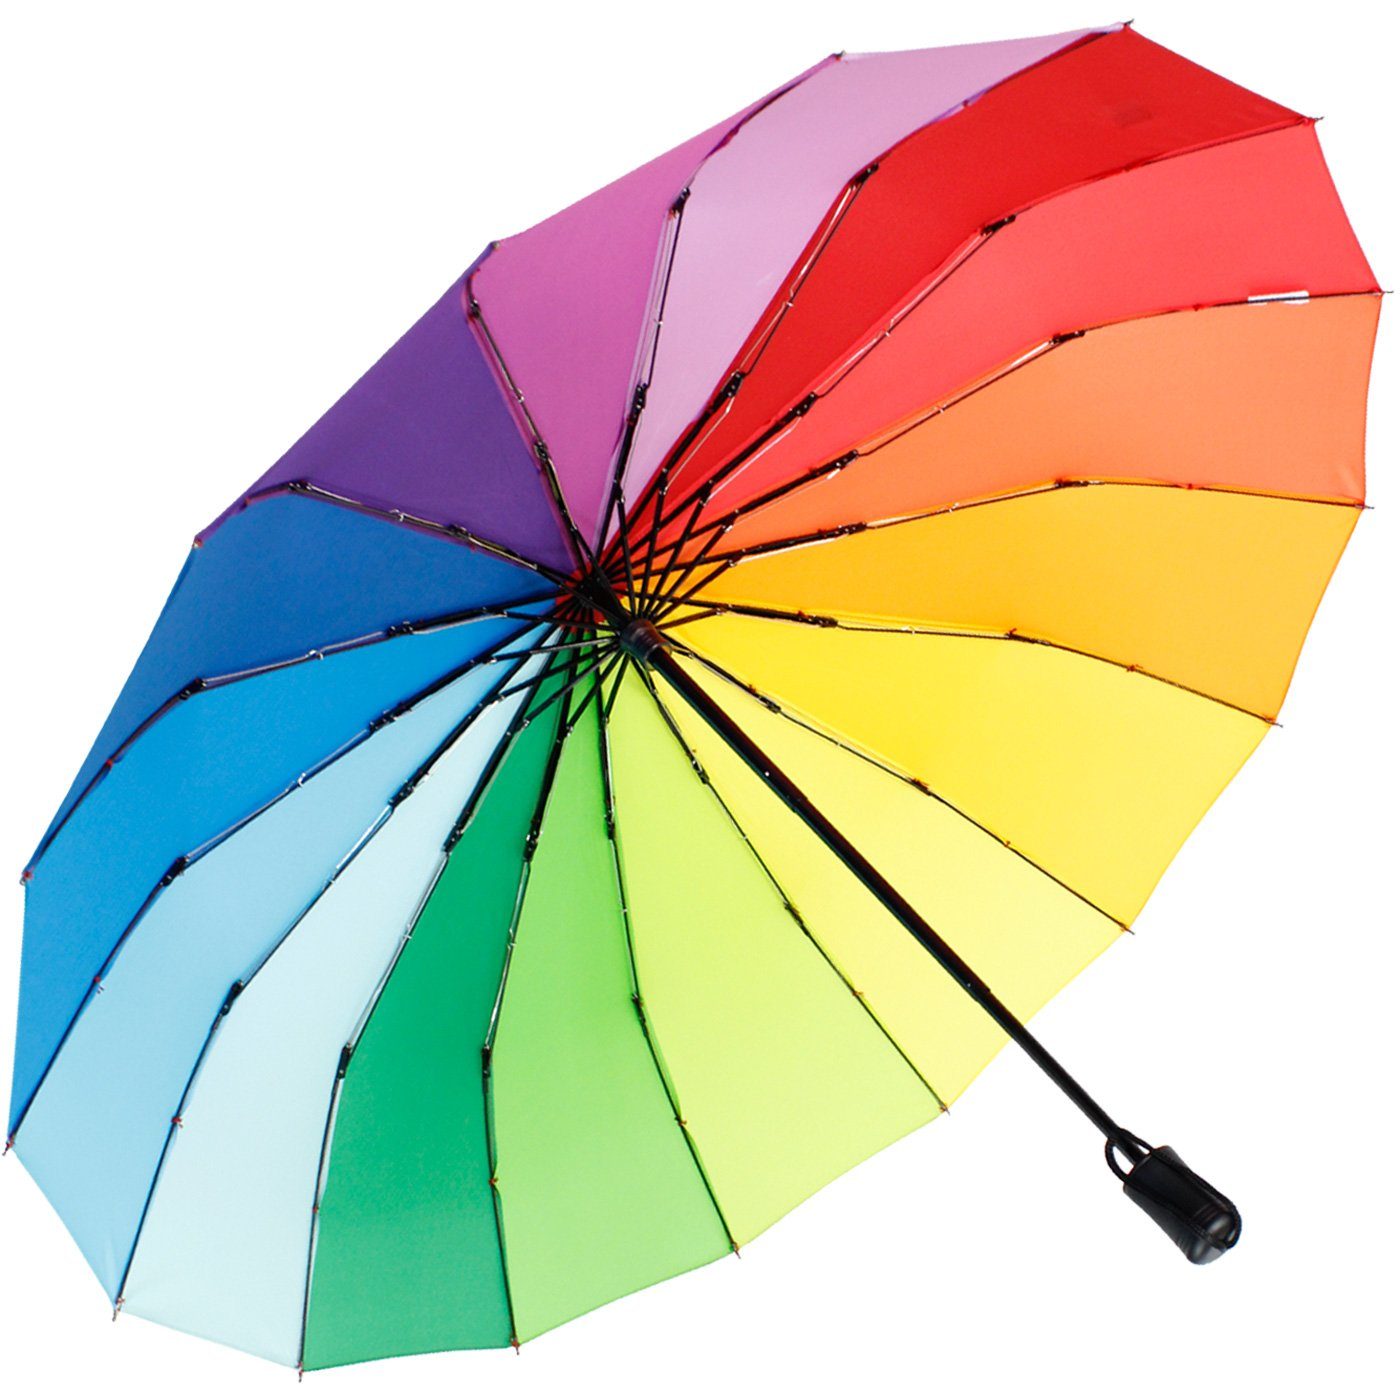 Streben und mit 16 Taschenregenschirm Regenbogen farbenfroh, farbenfroh stabil extra iX-brella Mini